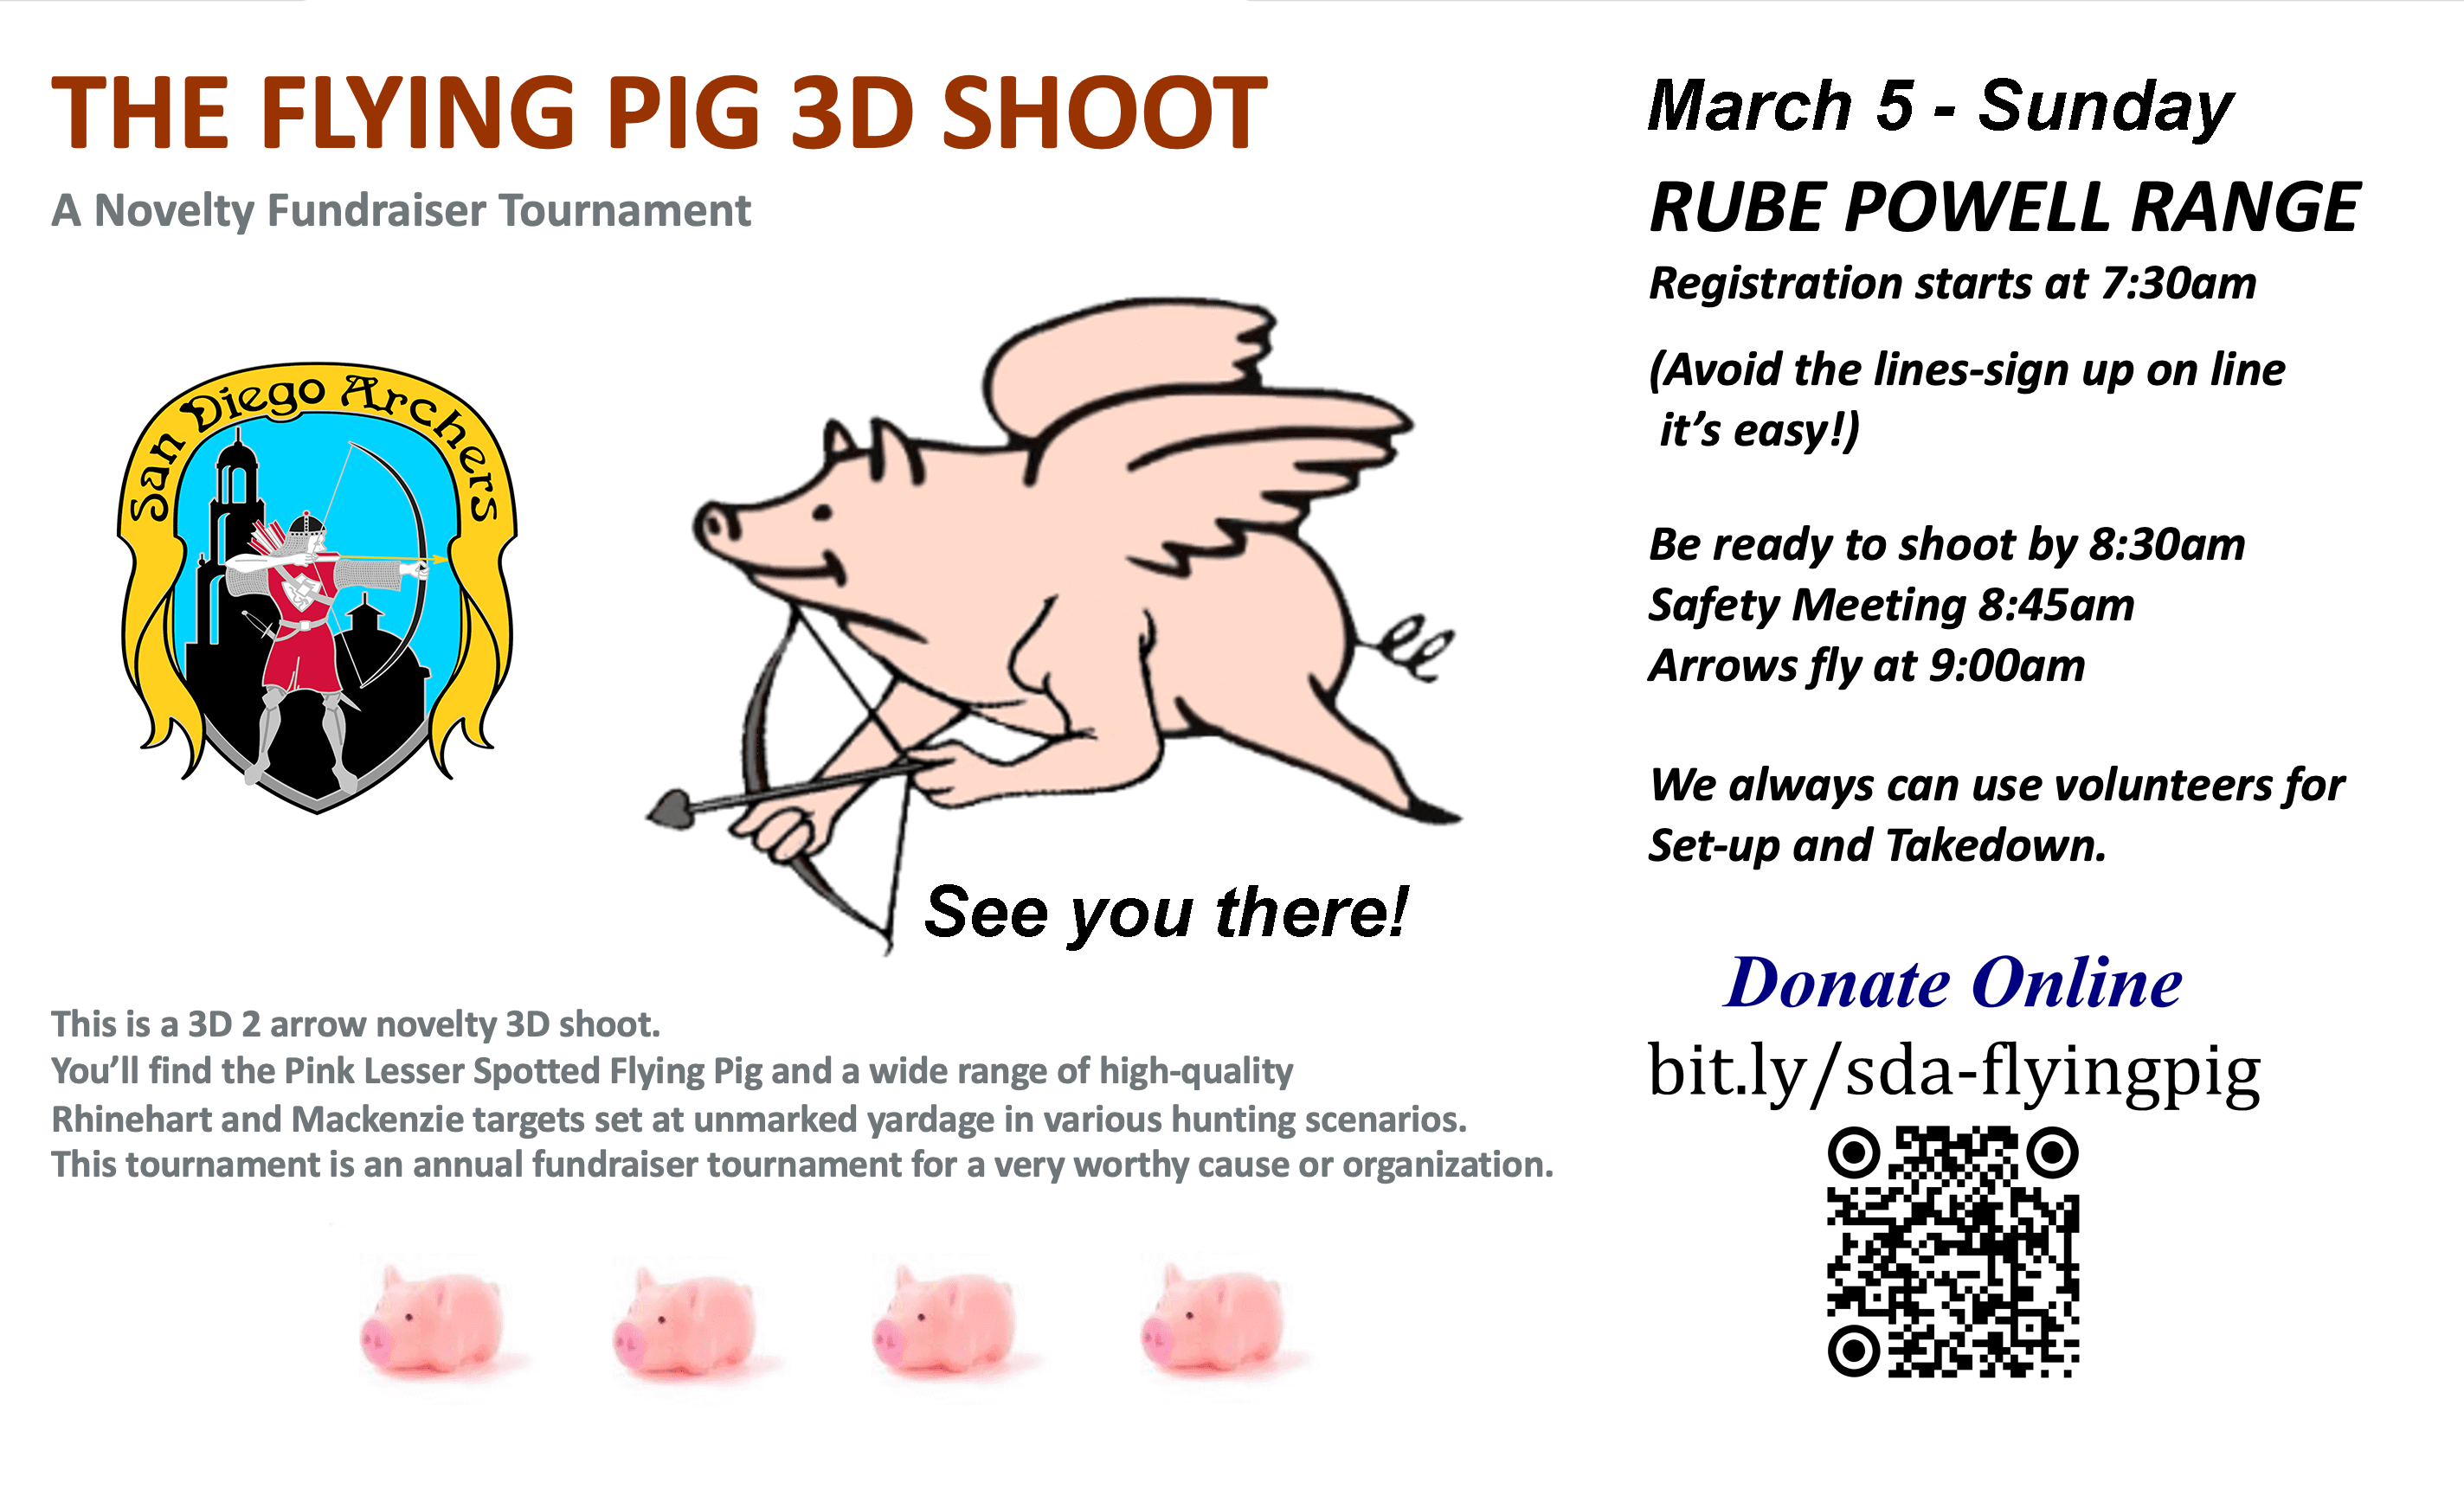 Flying Pig 3D Shoot & Fundraiser – Sunday, March 5, 2023